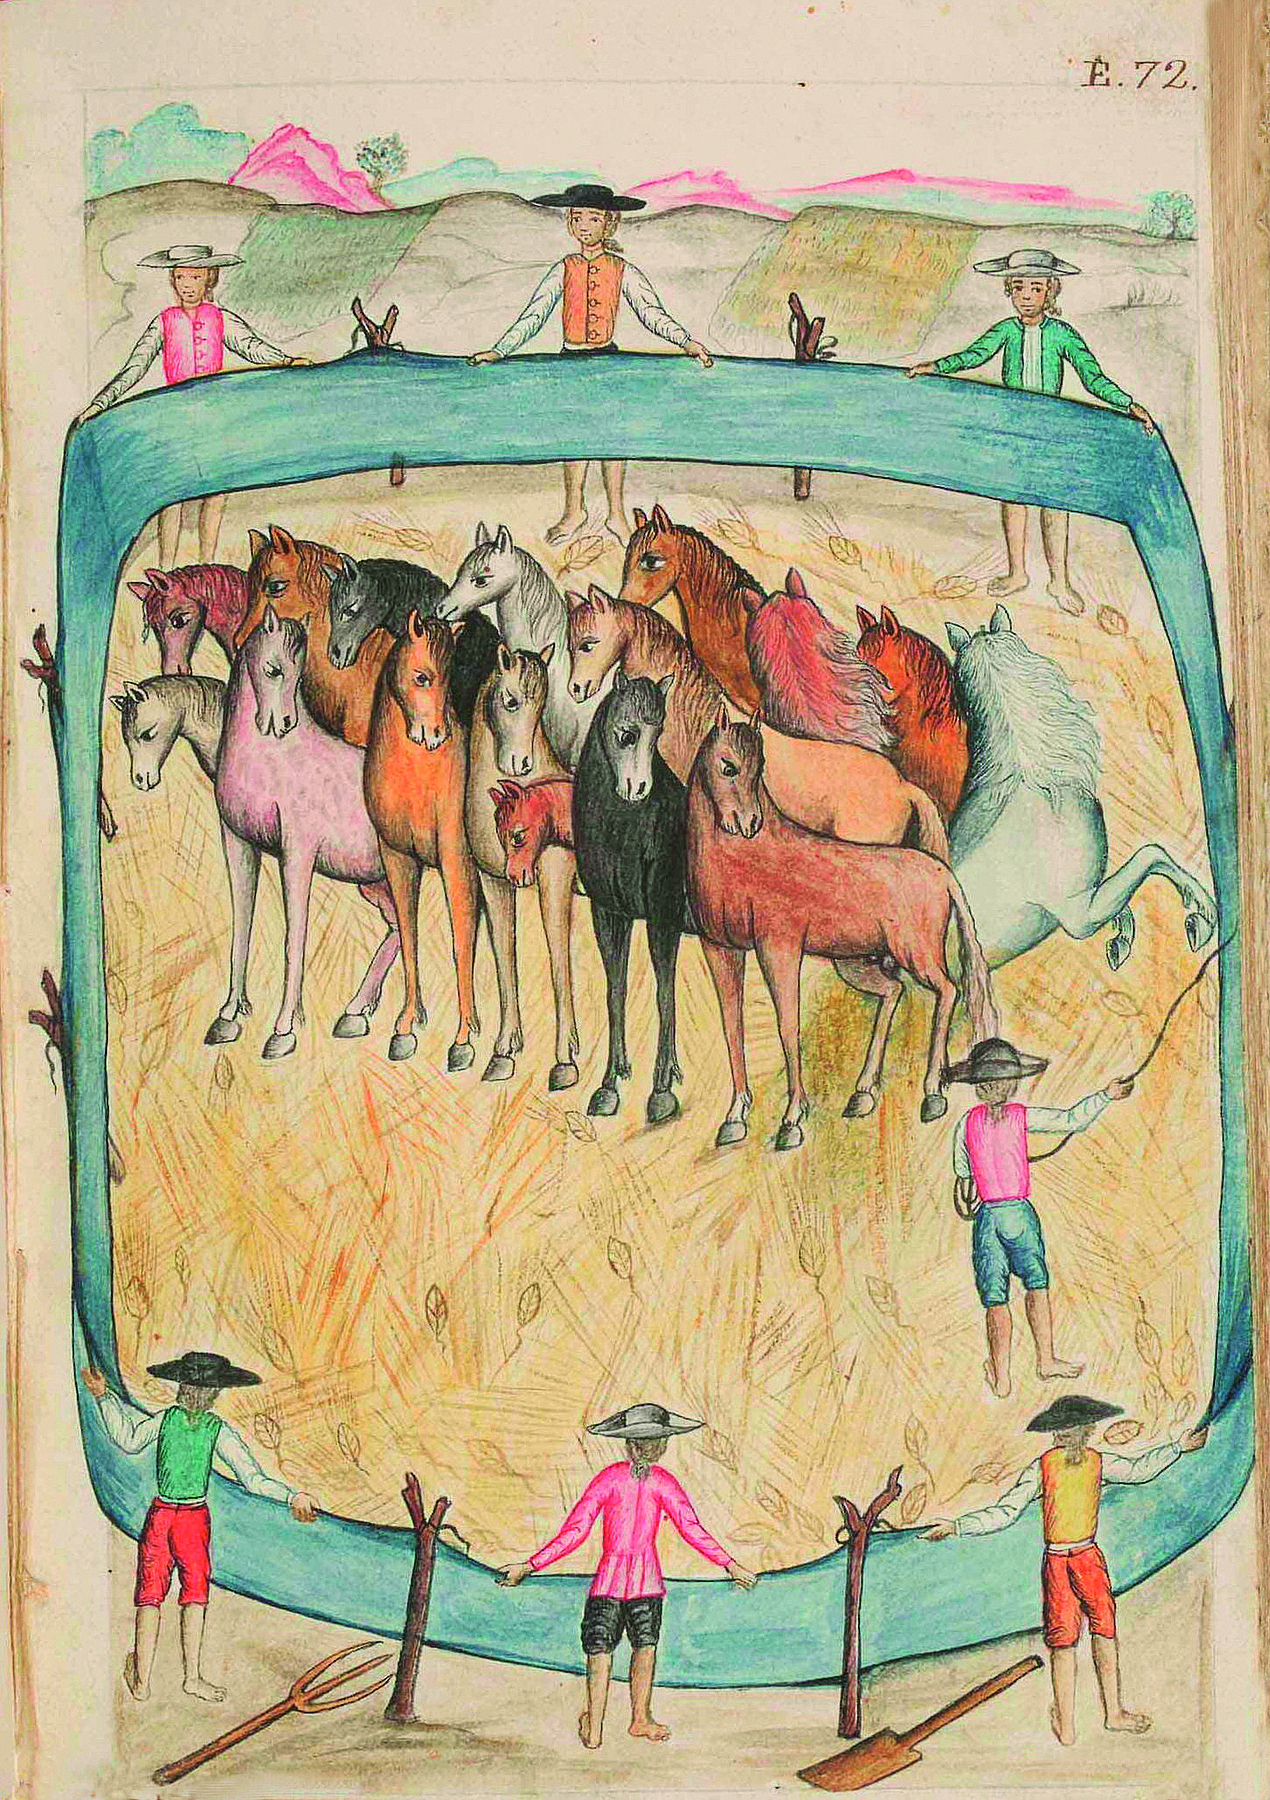 Ilustração. Uma redoma cercada, com homens por detrás das cercas, no entorno, com os olhares voltados para o interior, contendo diversos cavalos. Na redoma, há um homem, em pé, segurando um chicote com uma das mãos.